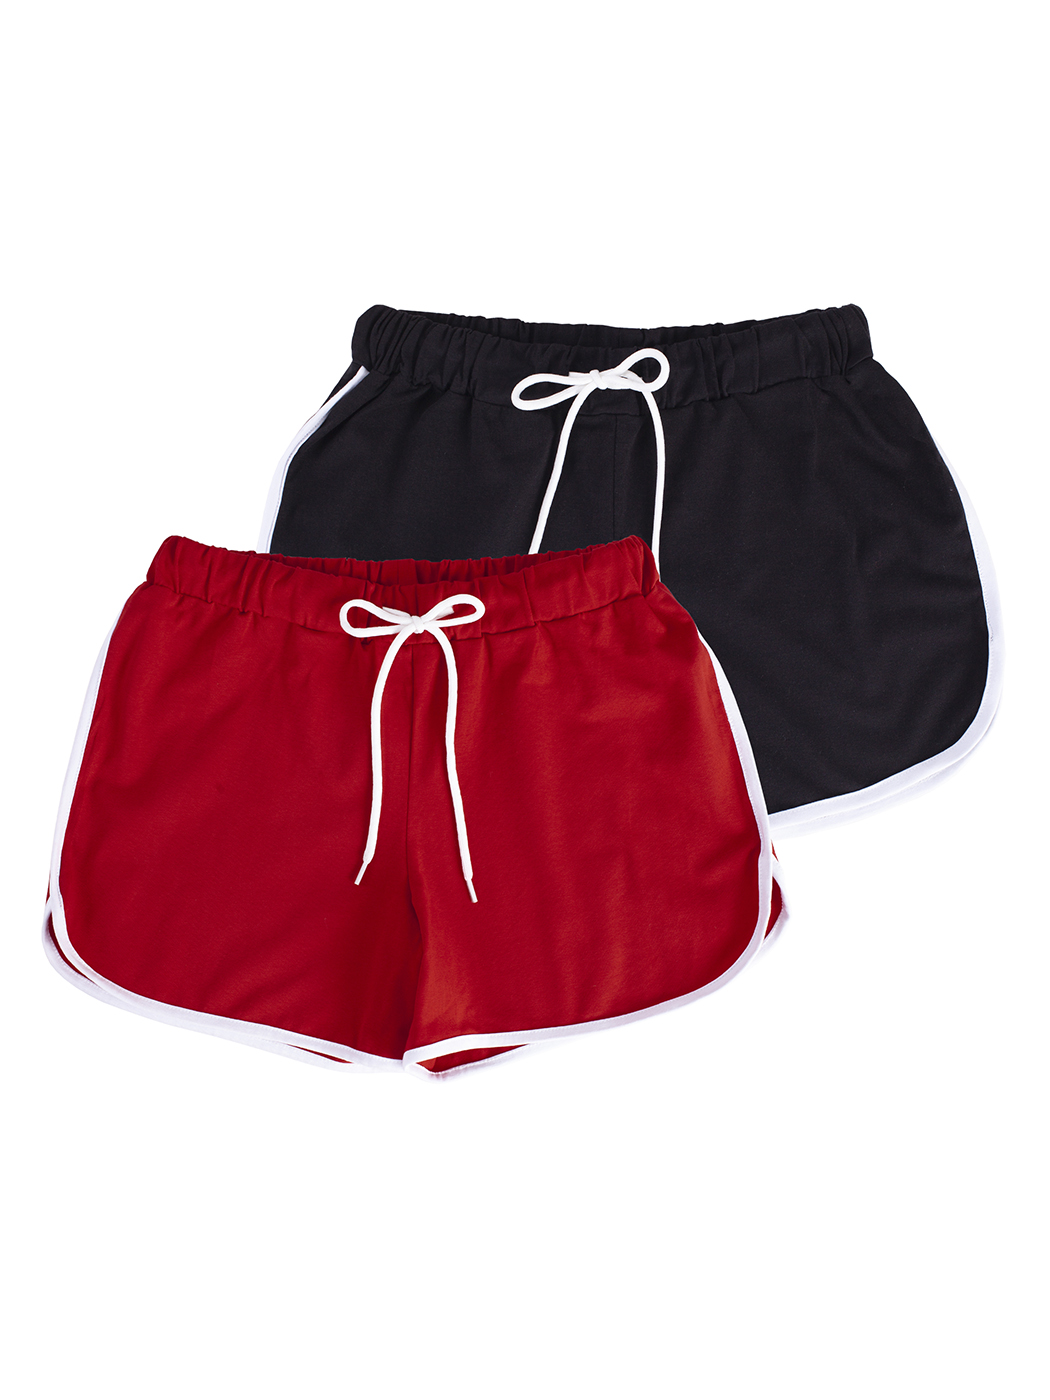 Cпортивные шорты женские Lunarable ksrt002-2_ красные XL